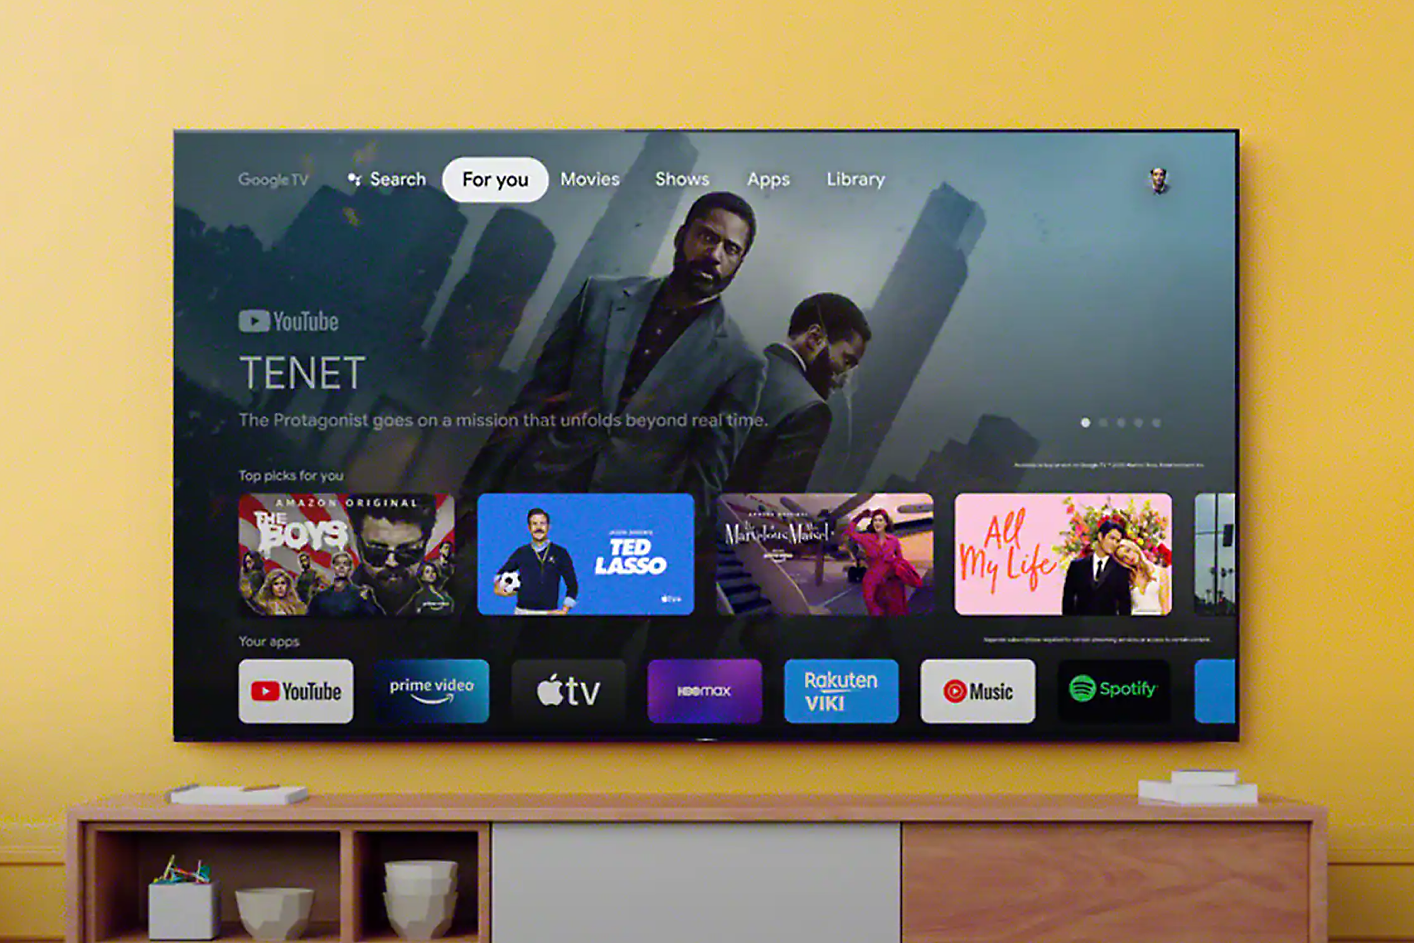 Televizní obrazovka ukazuje rozhraní s navigací vyhledávání a výběr aplikací se scénou z filmu „Tenet“ na displeji.